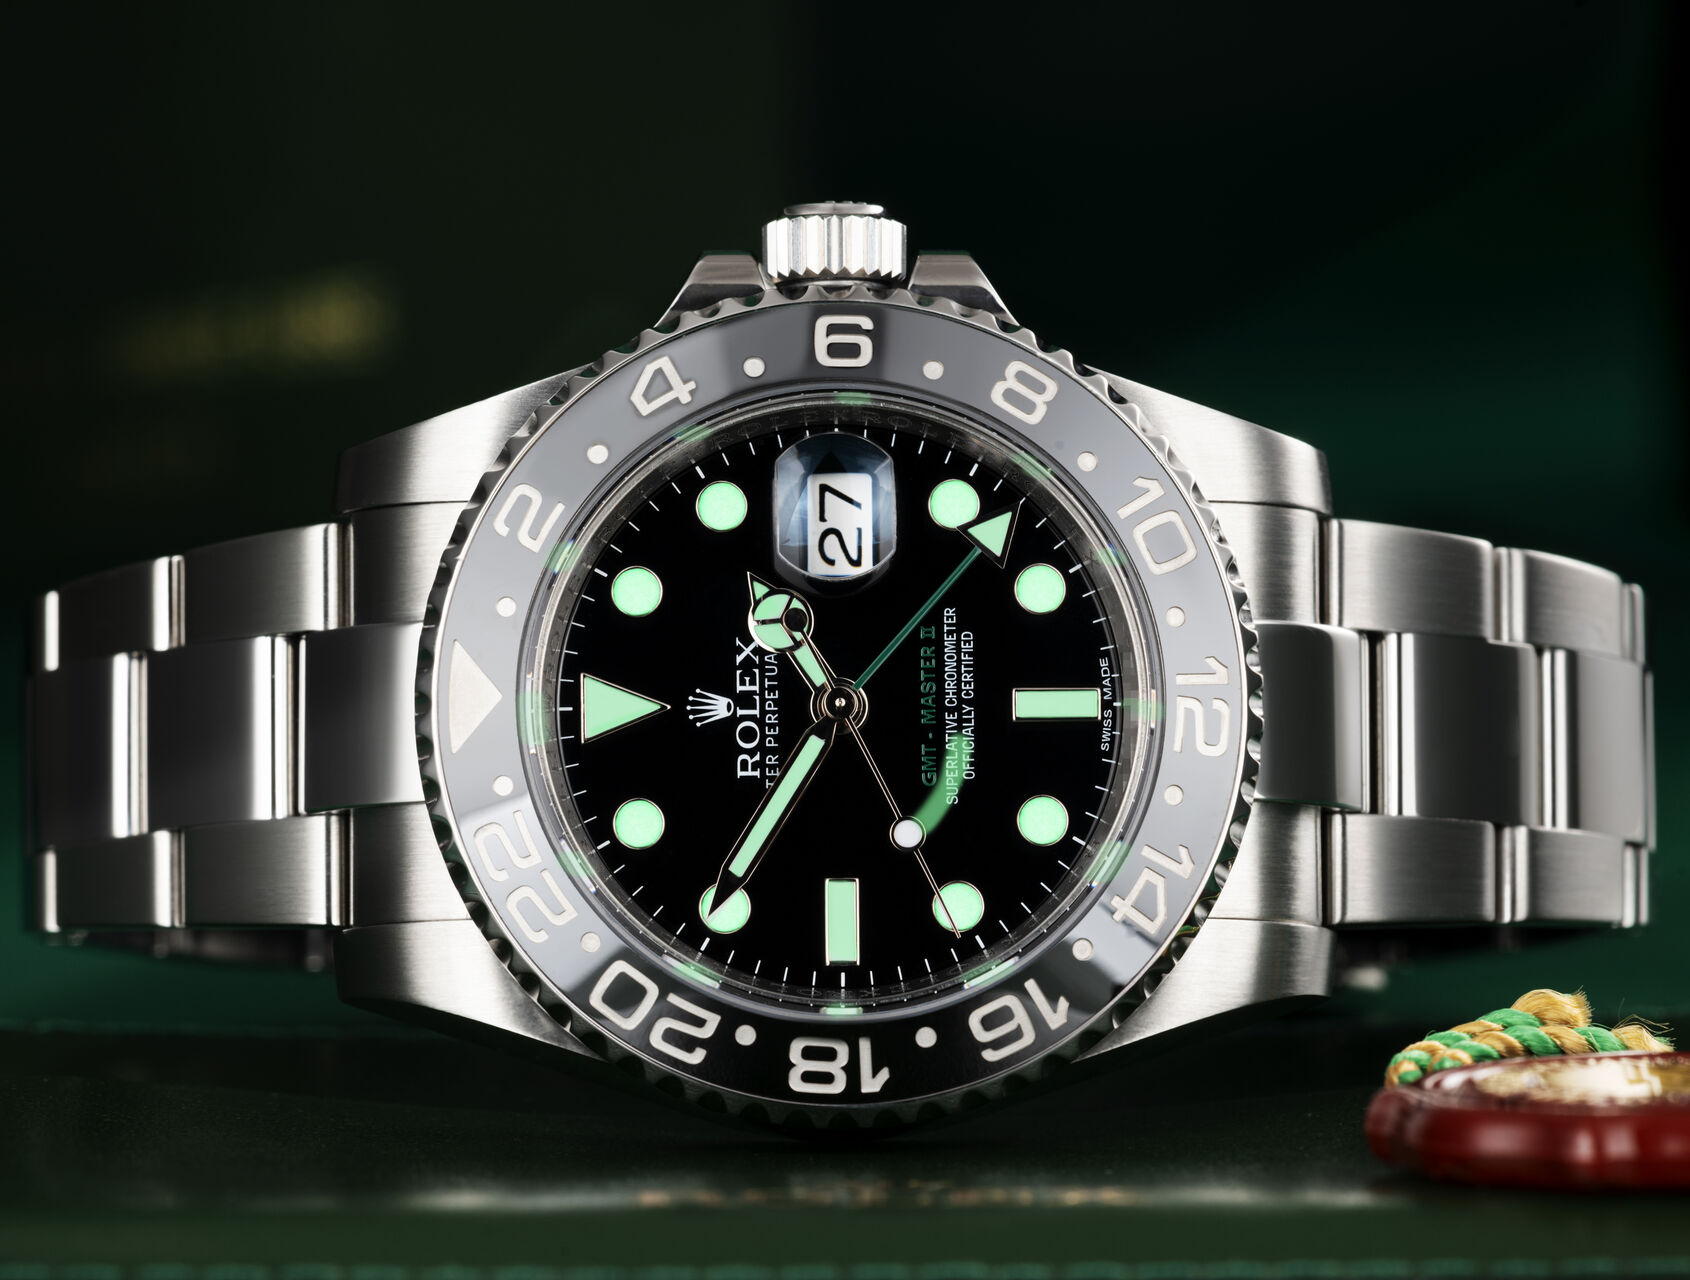 ref 116710LN | 116710LN - Under Rolex Warranty | Rolex GMT-Master II